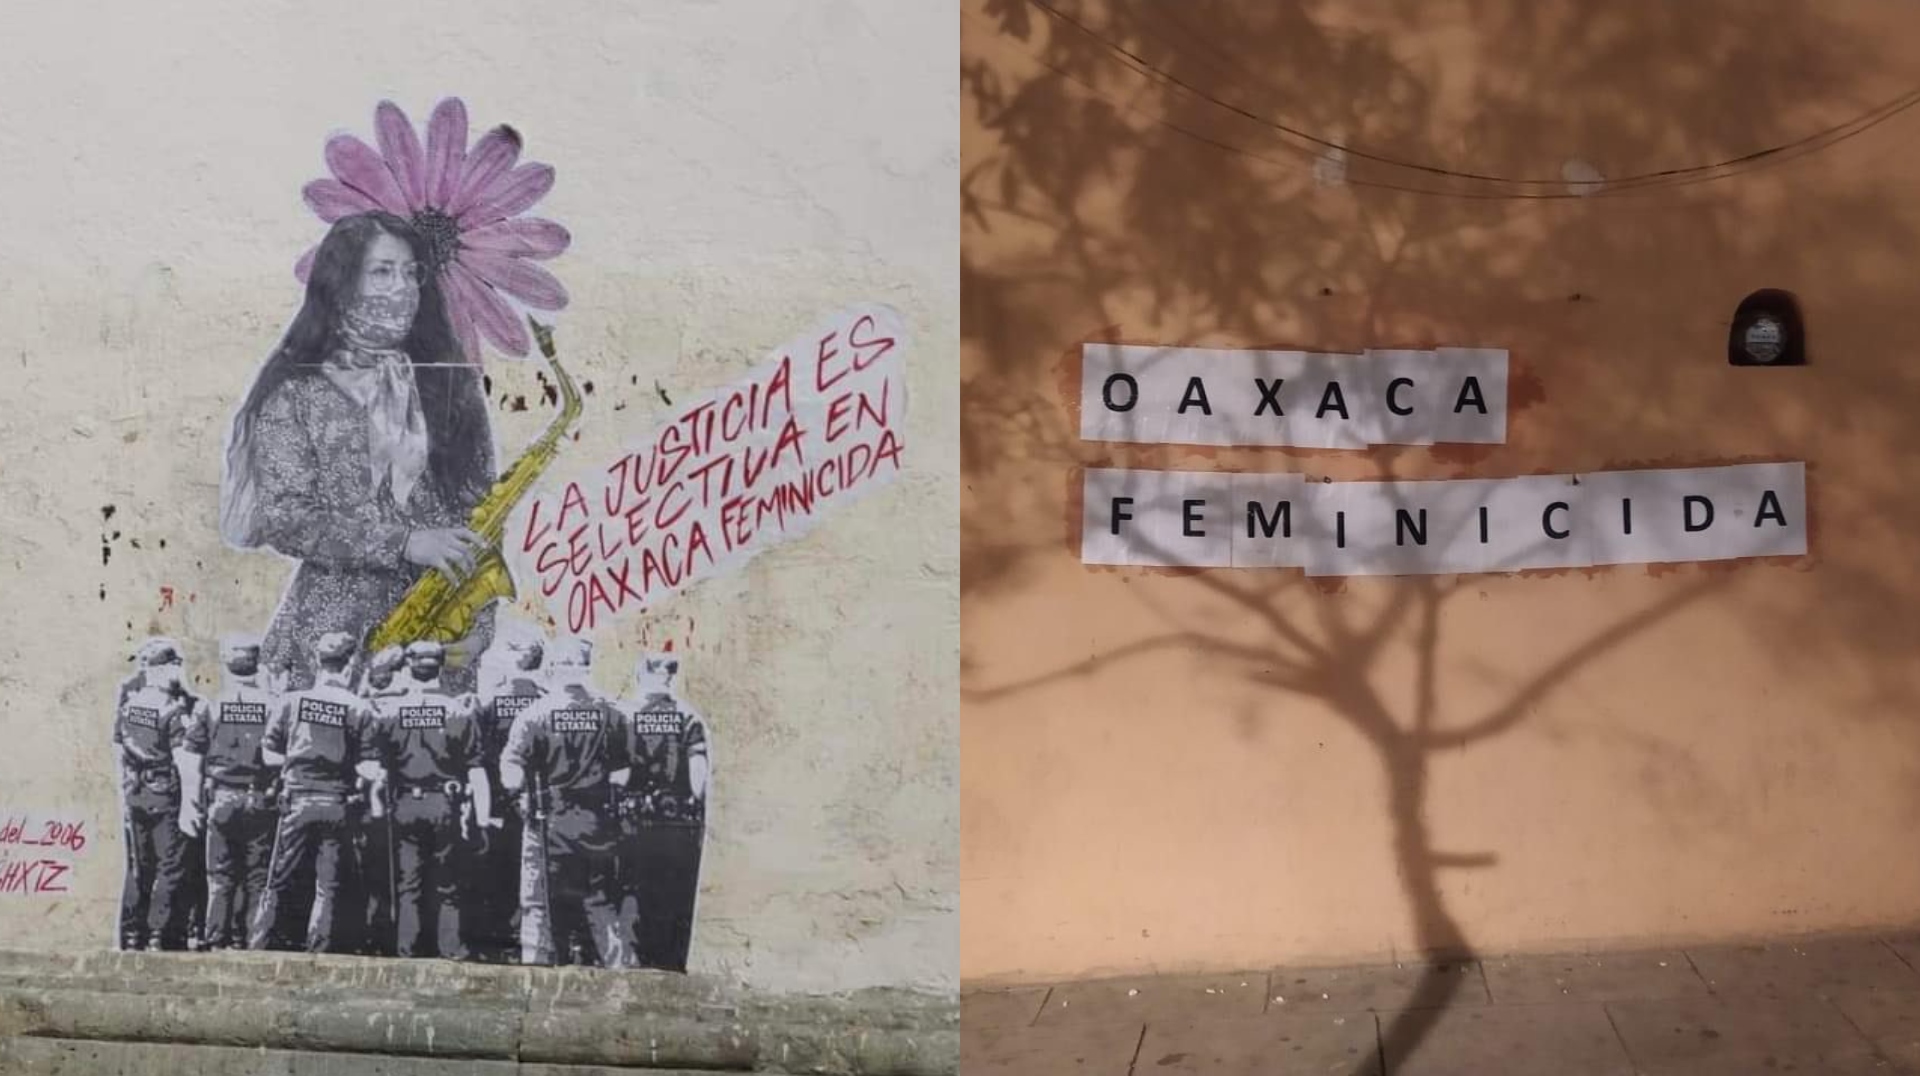 Protestas contra los feminicidios llenaron la ciudad de Oaxaca durante la Guelaguetza